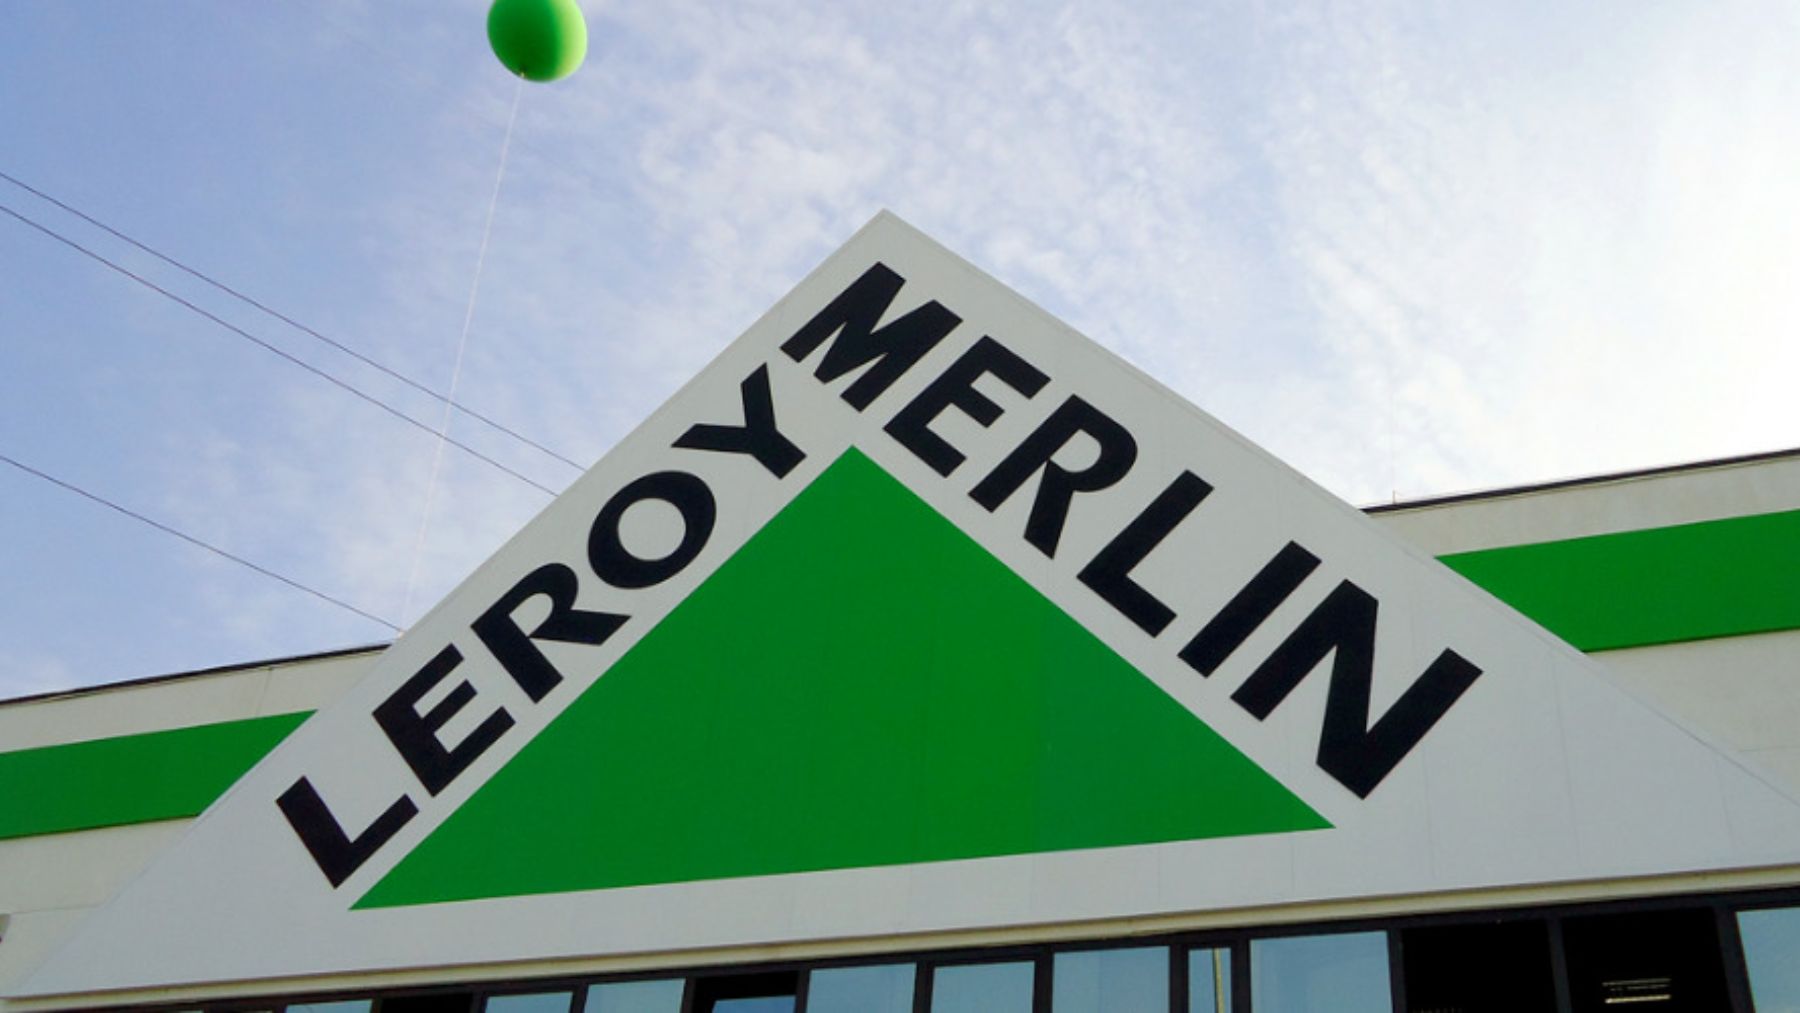 Adiós al olor a humedad: Leroy Merlin vende este tendedero eléctrico